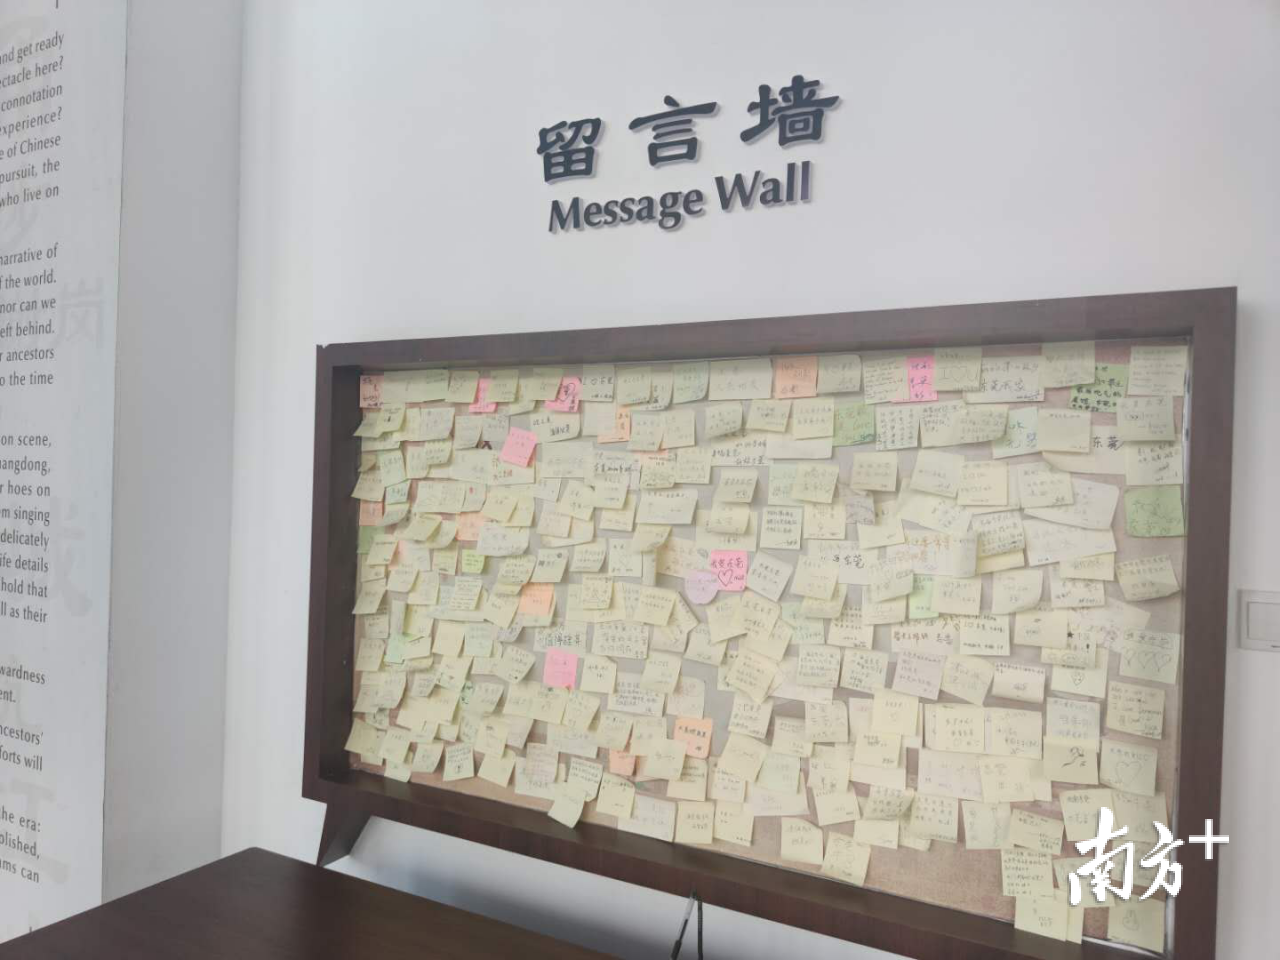 东莞市文化馆非物质文化遗产展厅留言墙.